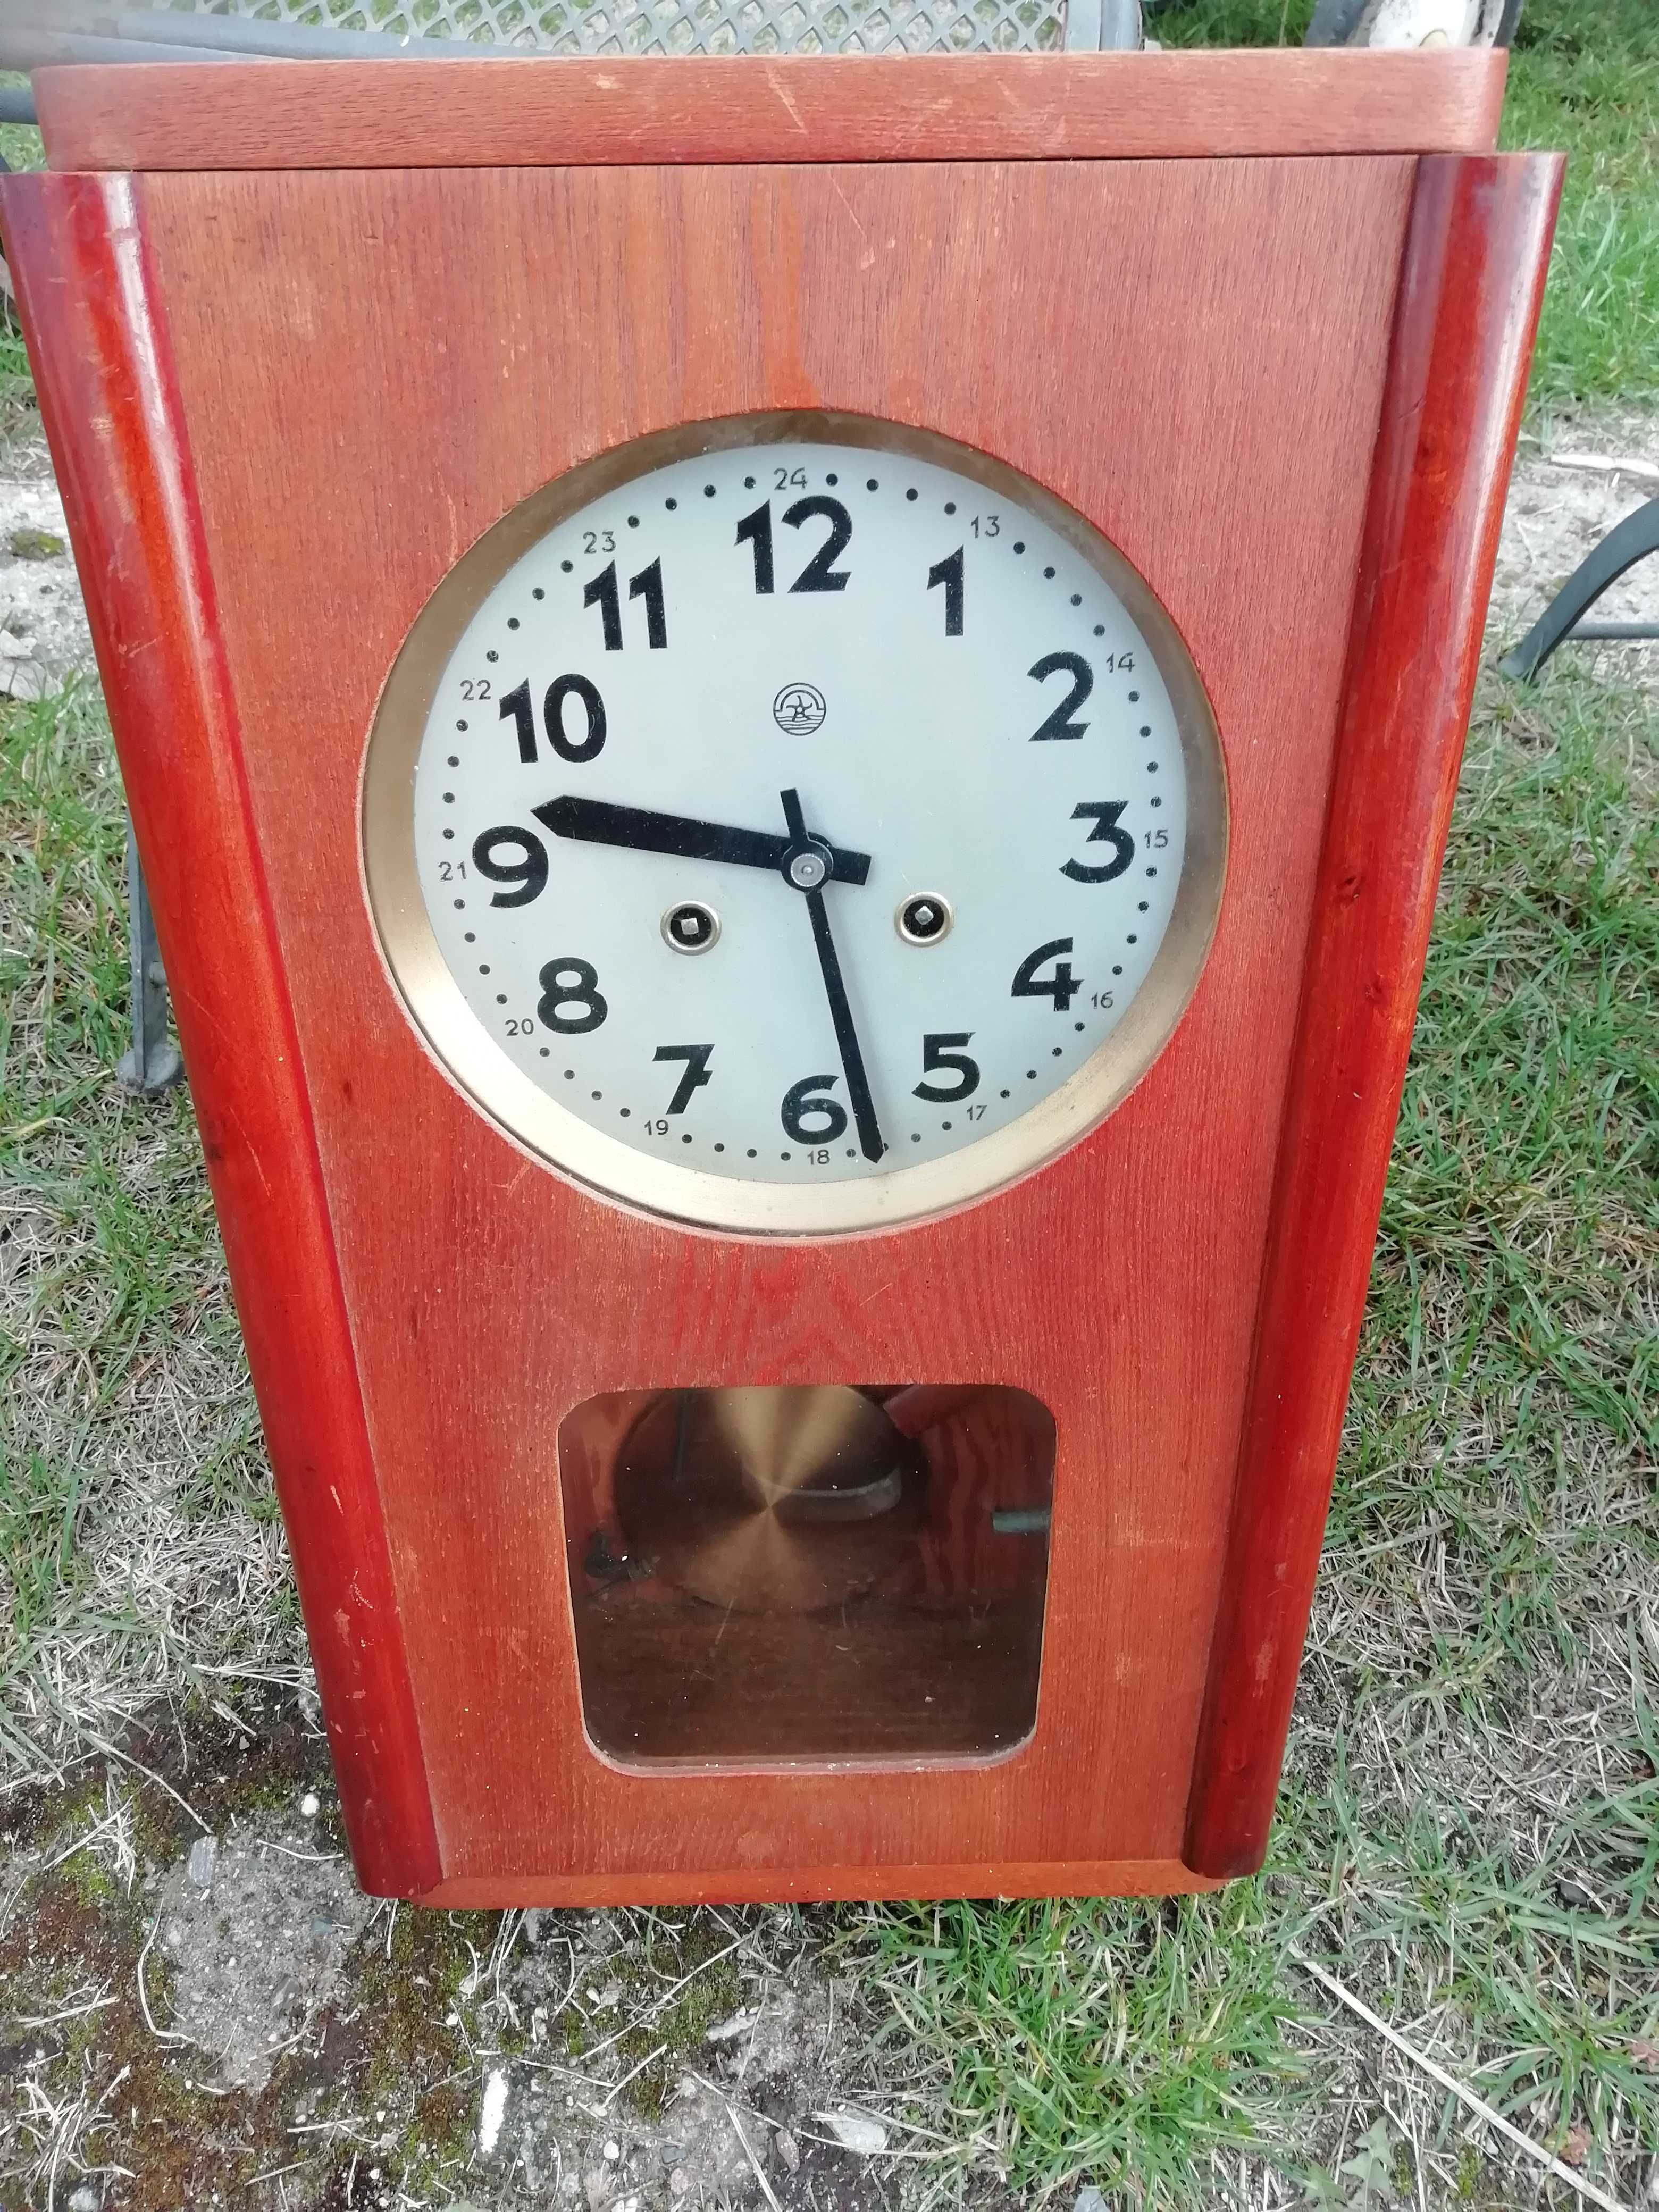 Stary zegar scienny